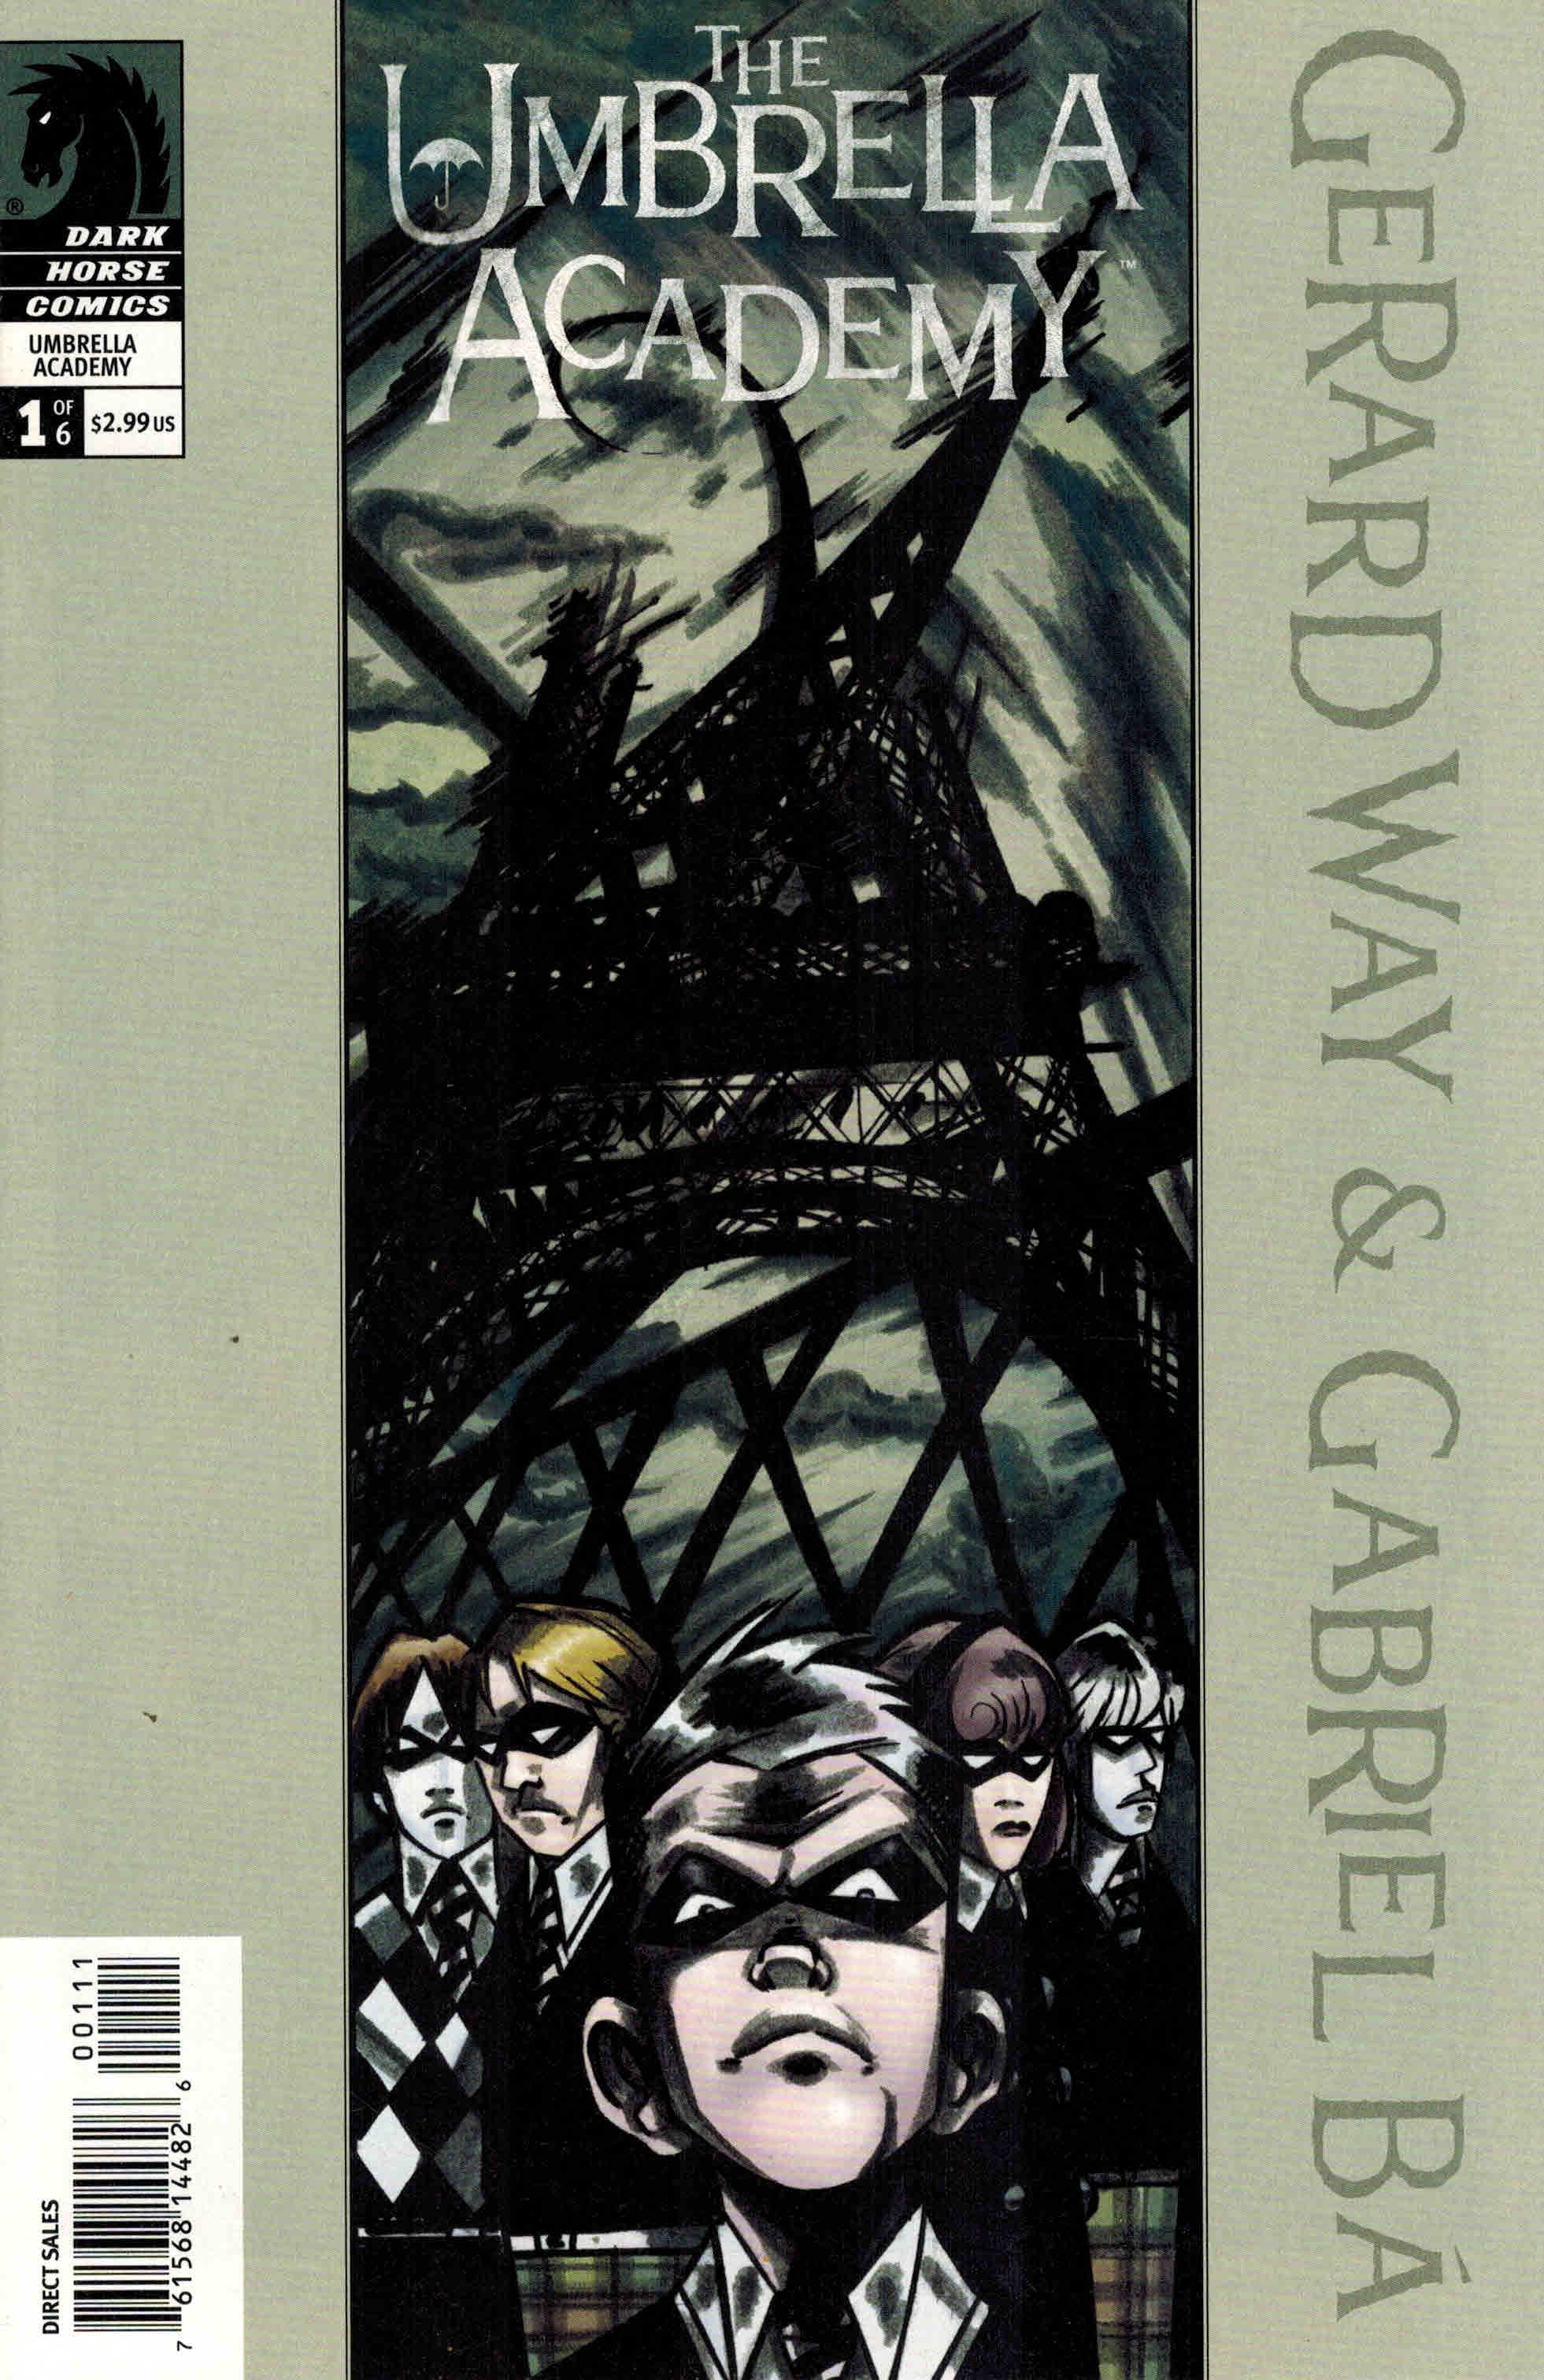 The Umbrella Academy, Vol. 1 by Gerard Way